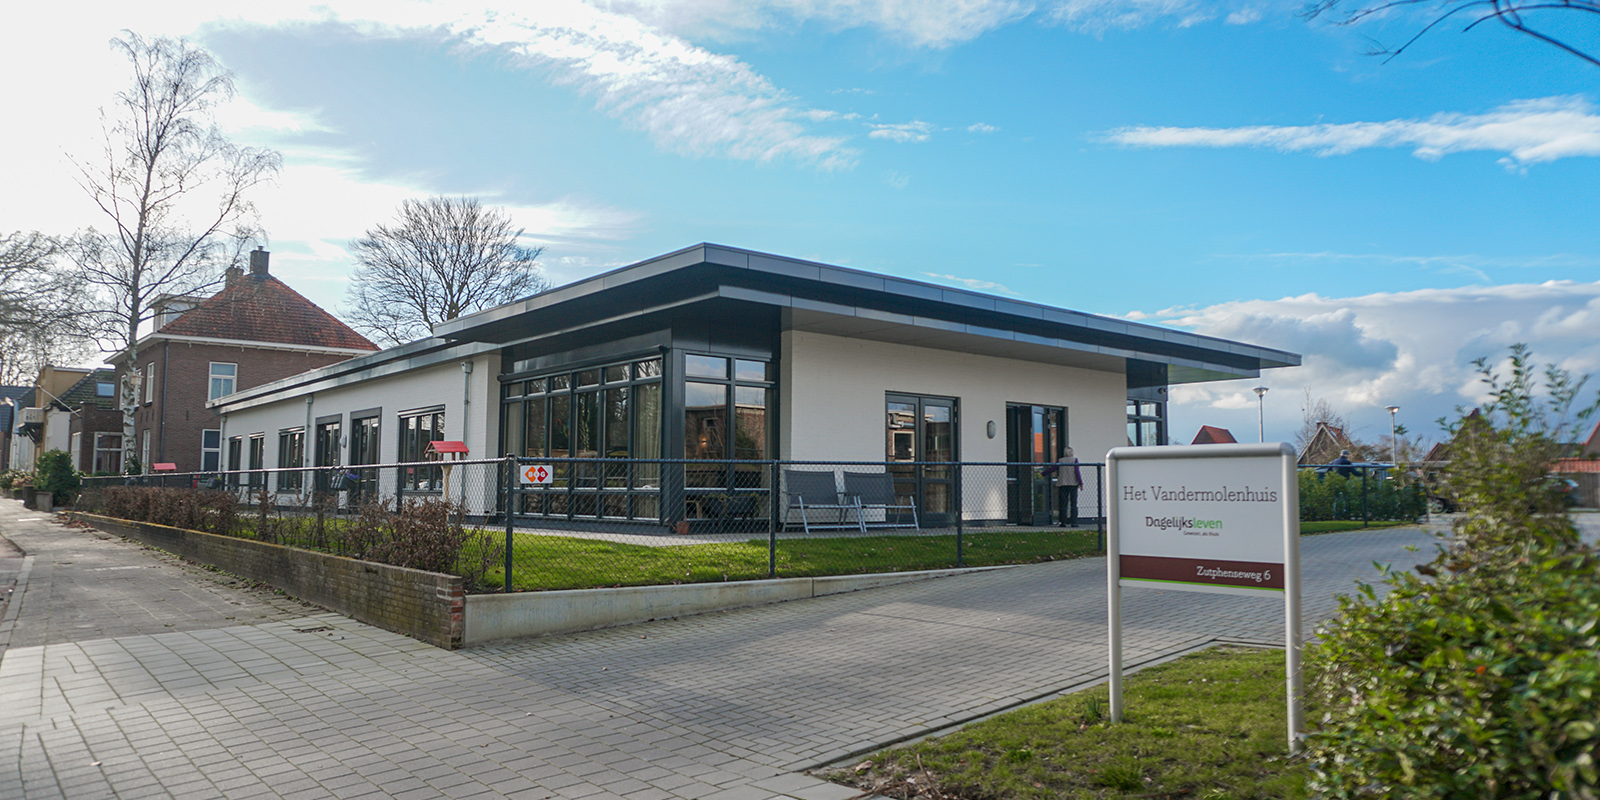 Het Vandermolenhuis in Lochem is een kleinschalige en betaalbare woonzorglocatie voor mensen met dementie